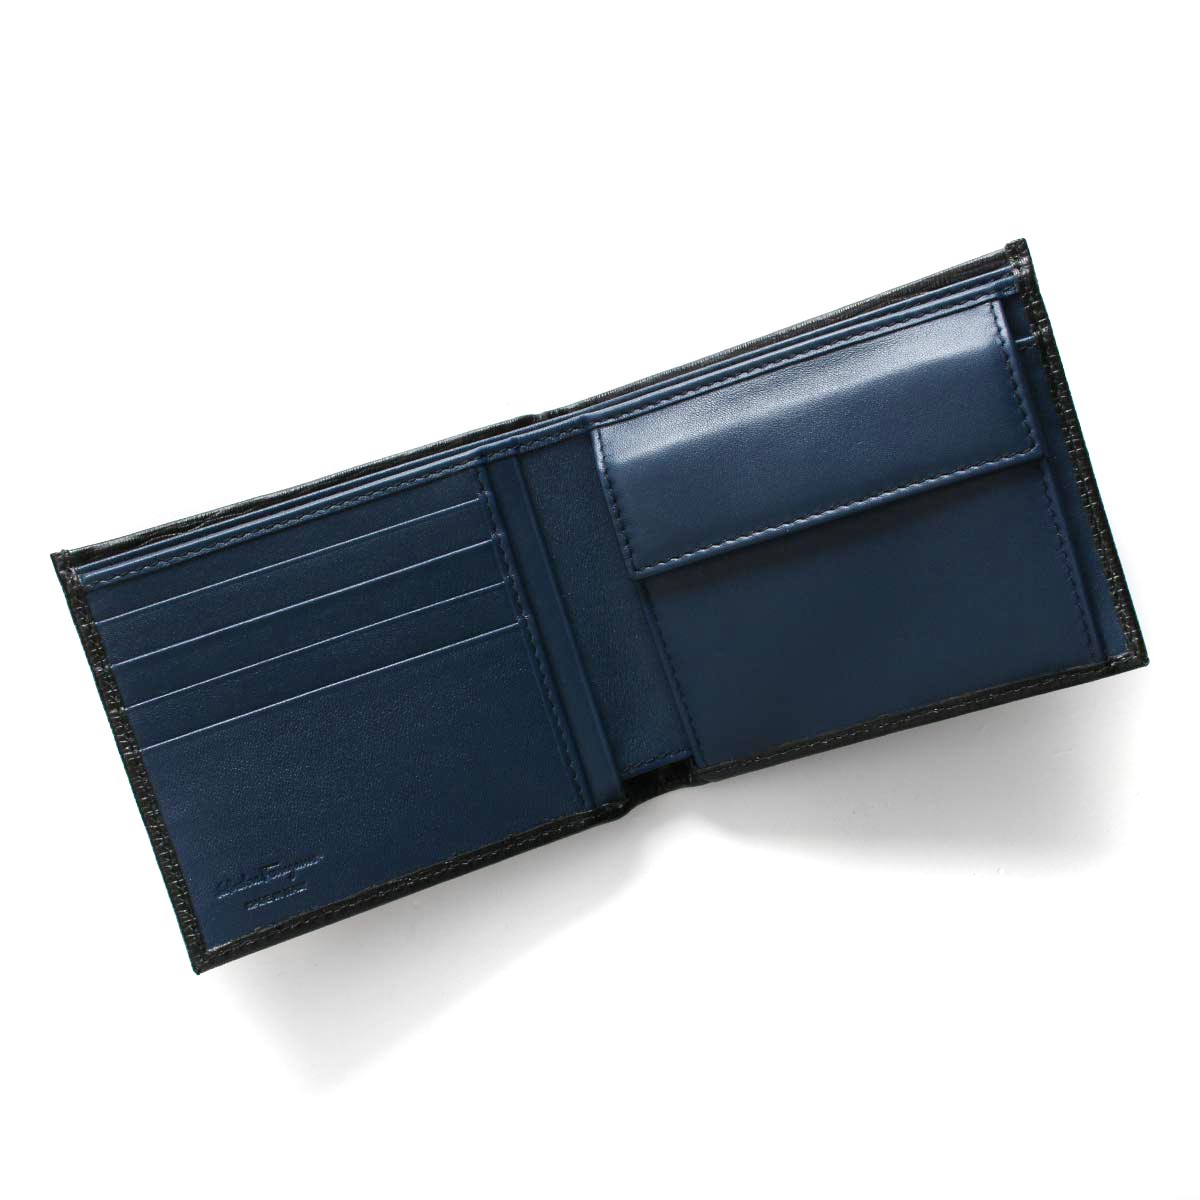 フェラガモ 二つ折り財布 財布 メンズ リバイバル ダブル ガンチーニ ブラック&フィヨルドブルー 66A065 NERO R FJORD BLUE  0685987 SALVATORE FERRAGAMO